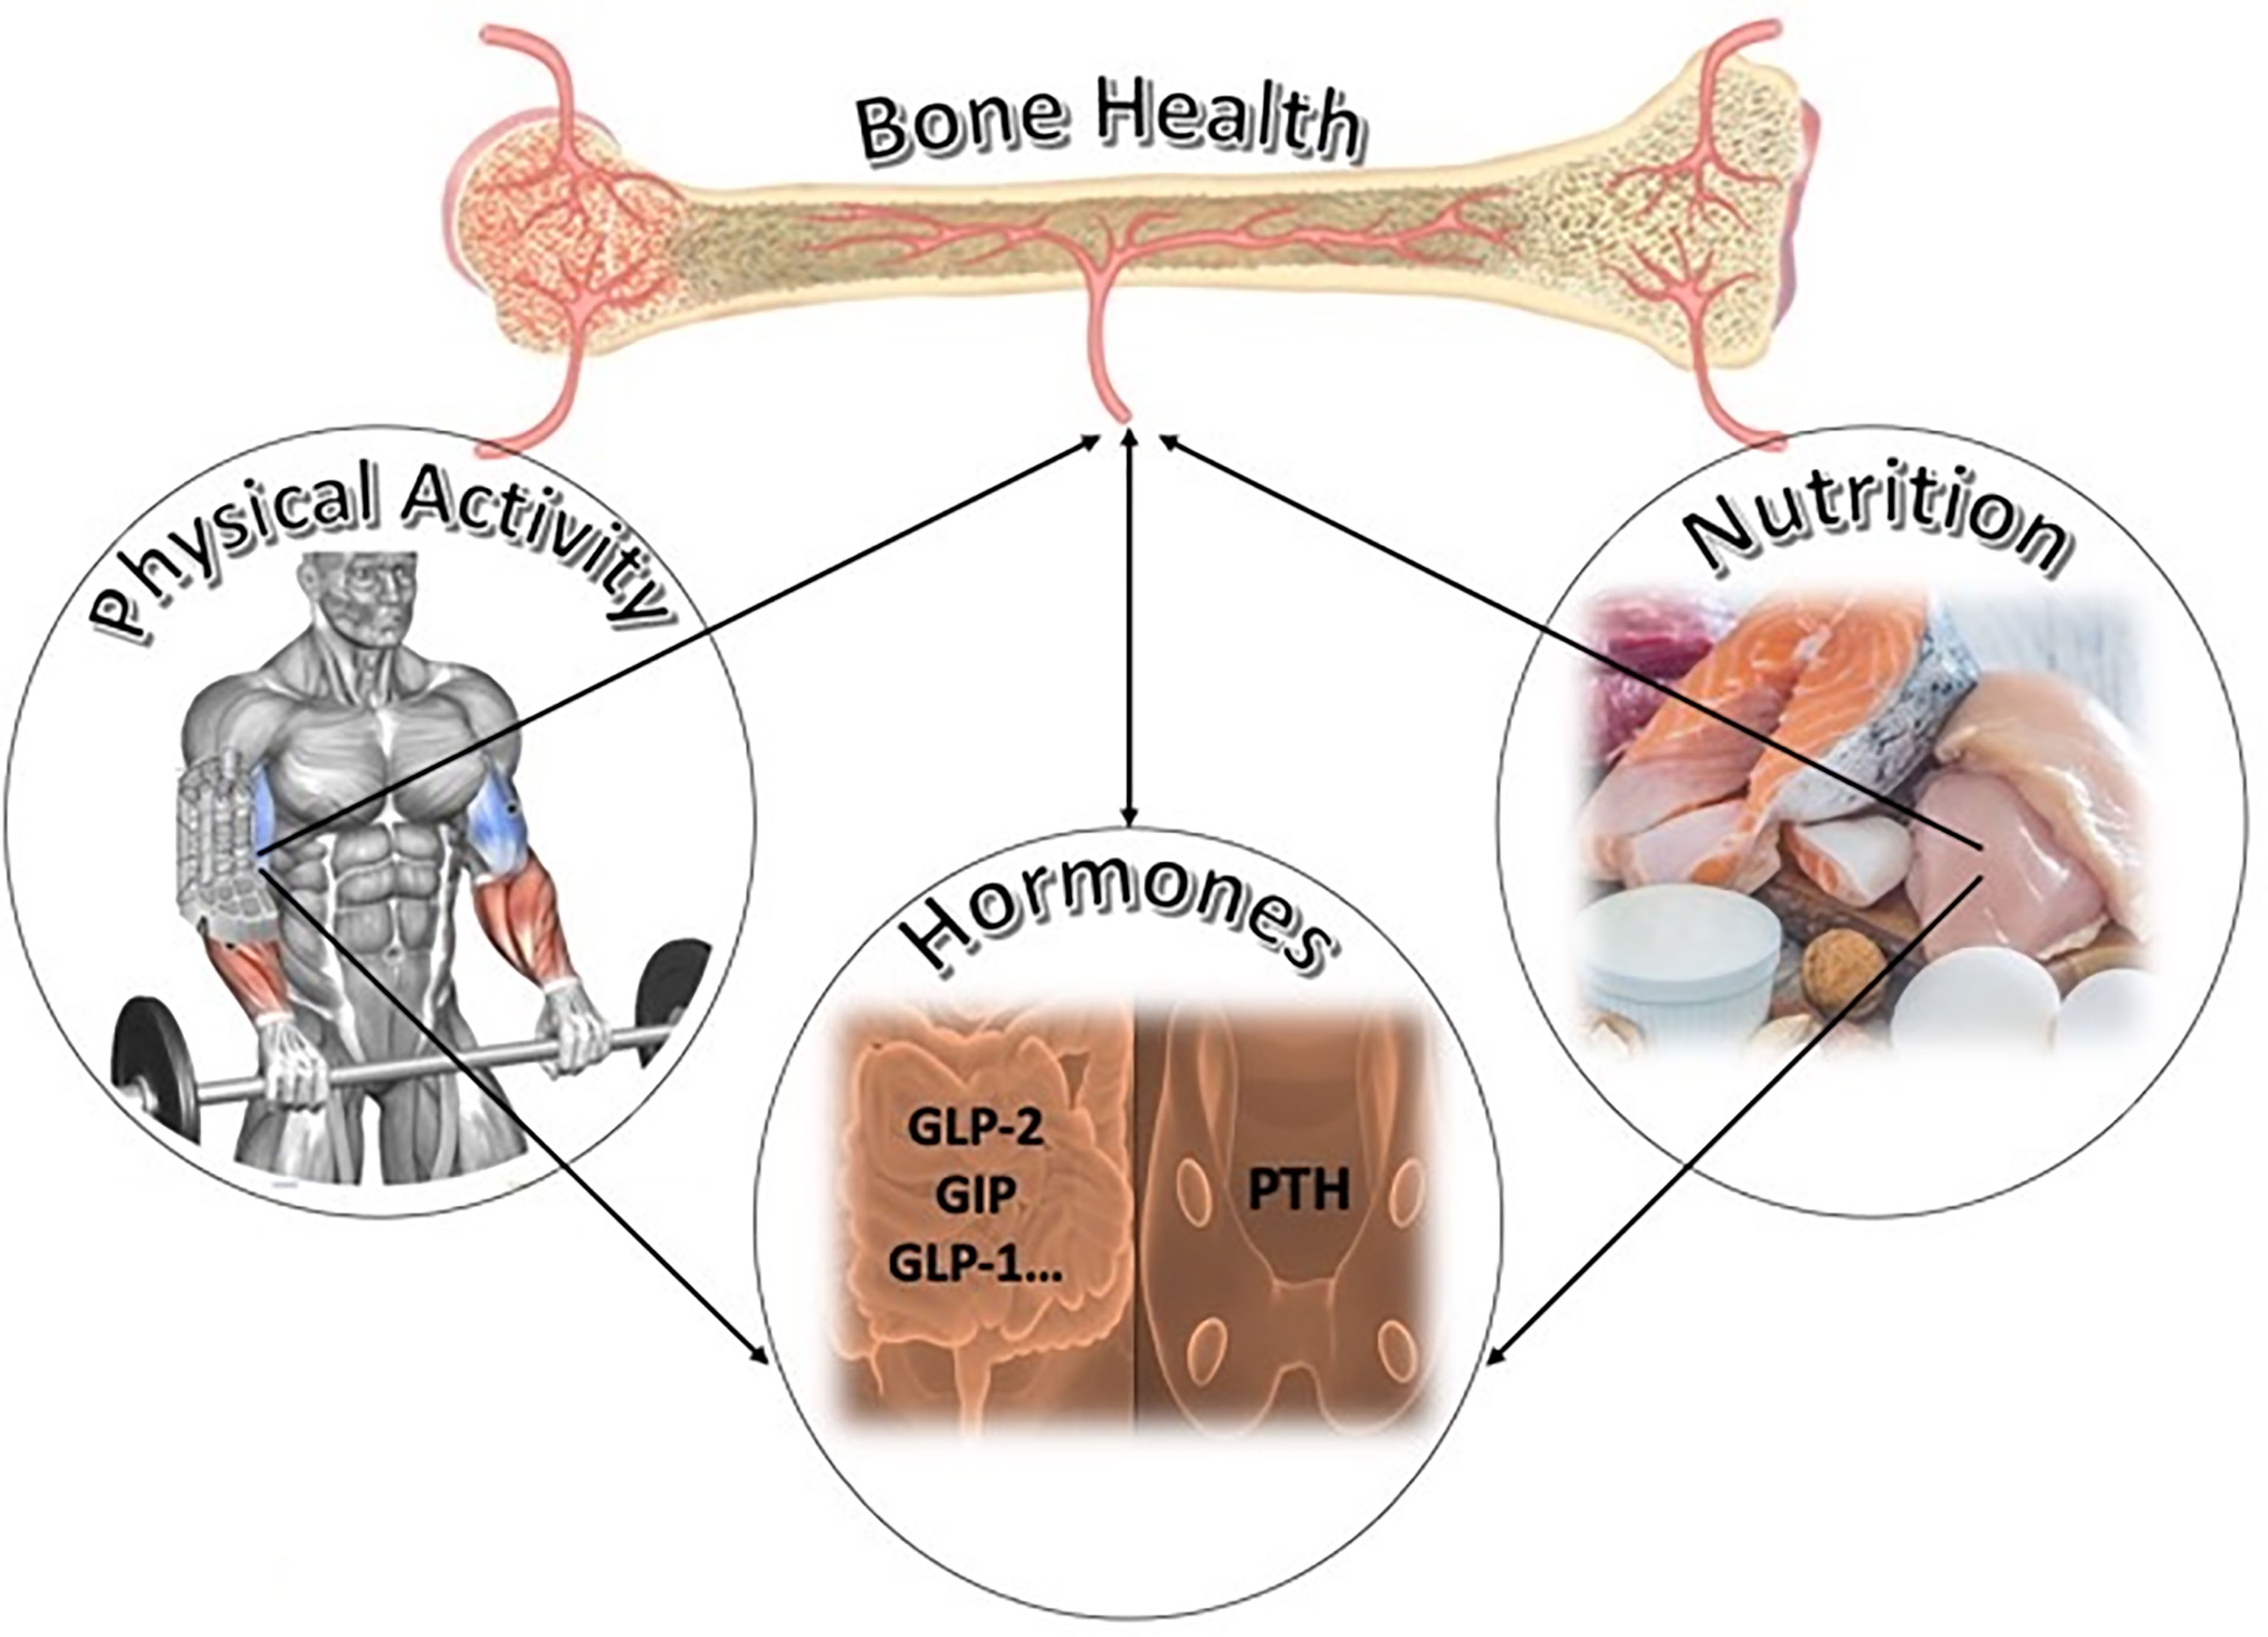 Athlete bone health resources